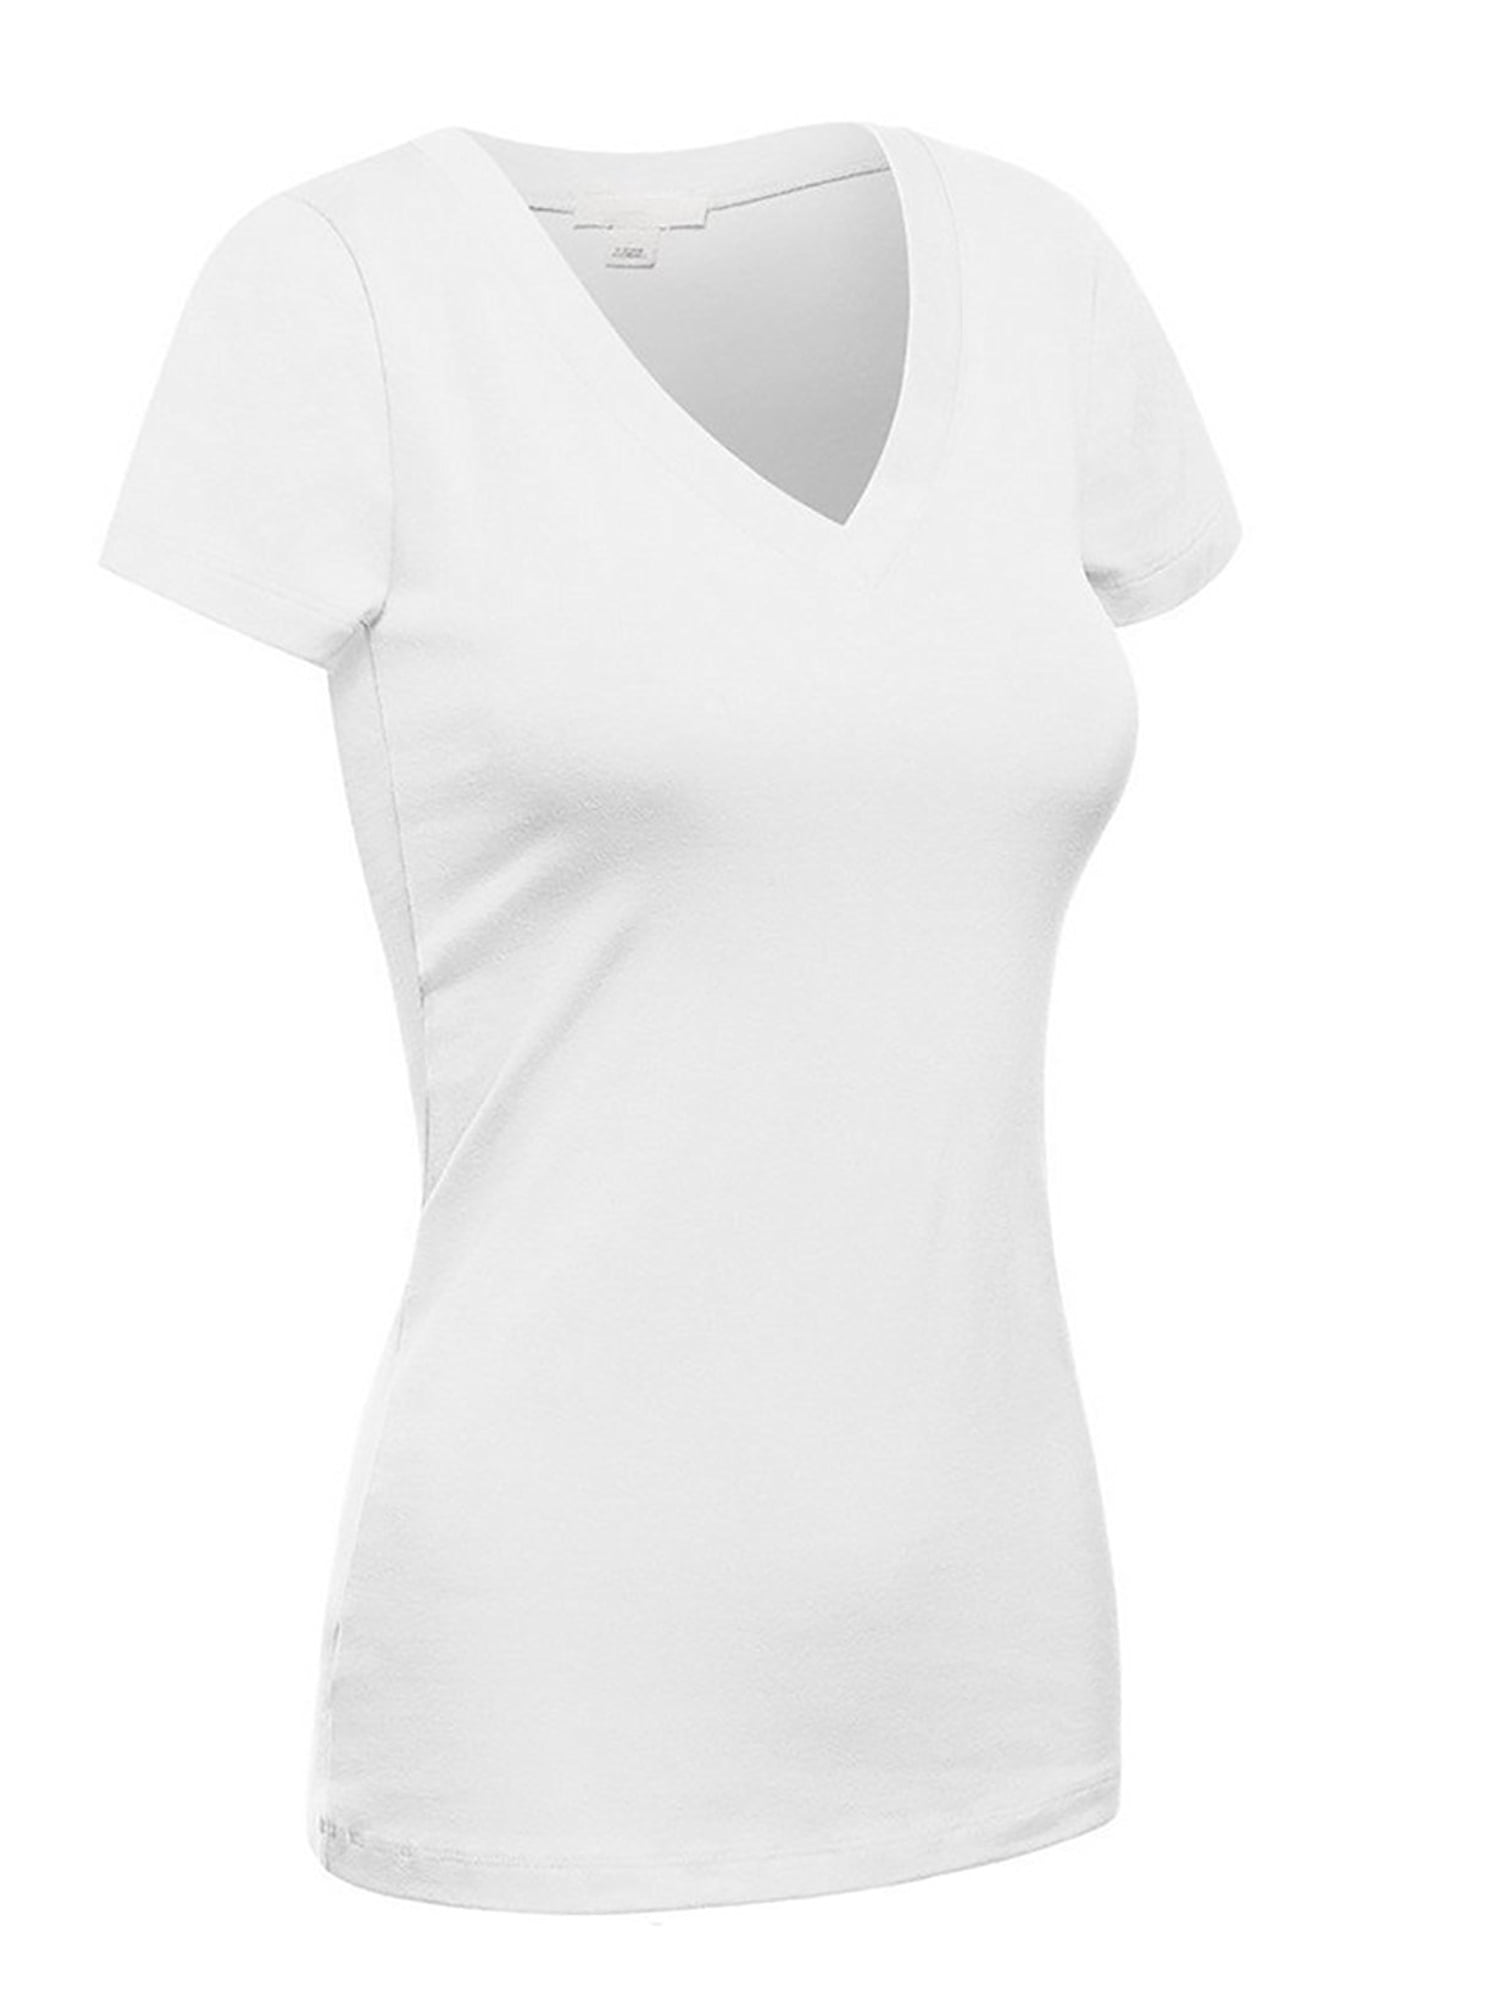 Emmalise Women's Short Sleeve T Shirt V Neck Tee (White, Small ...